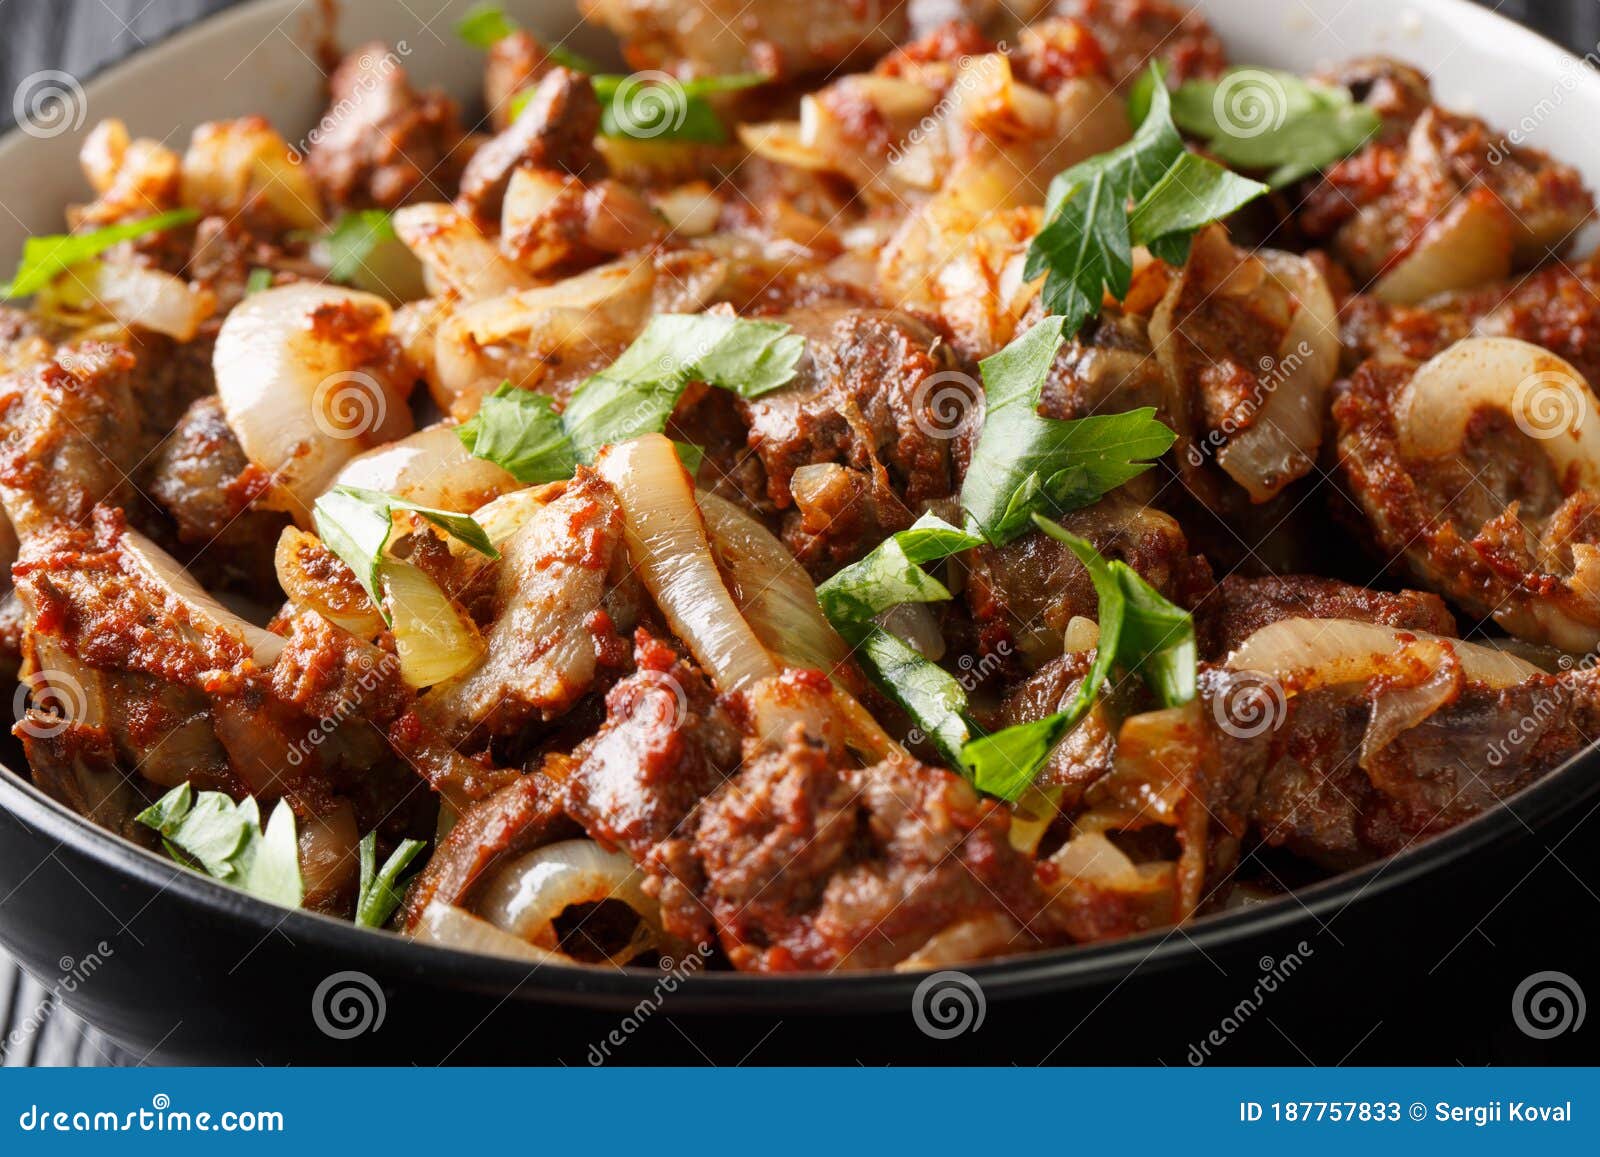 Fígado frito com cebola e especiarias num prato sobre a mesa